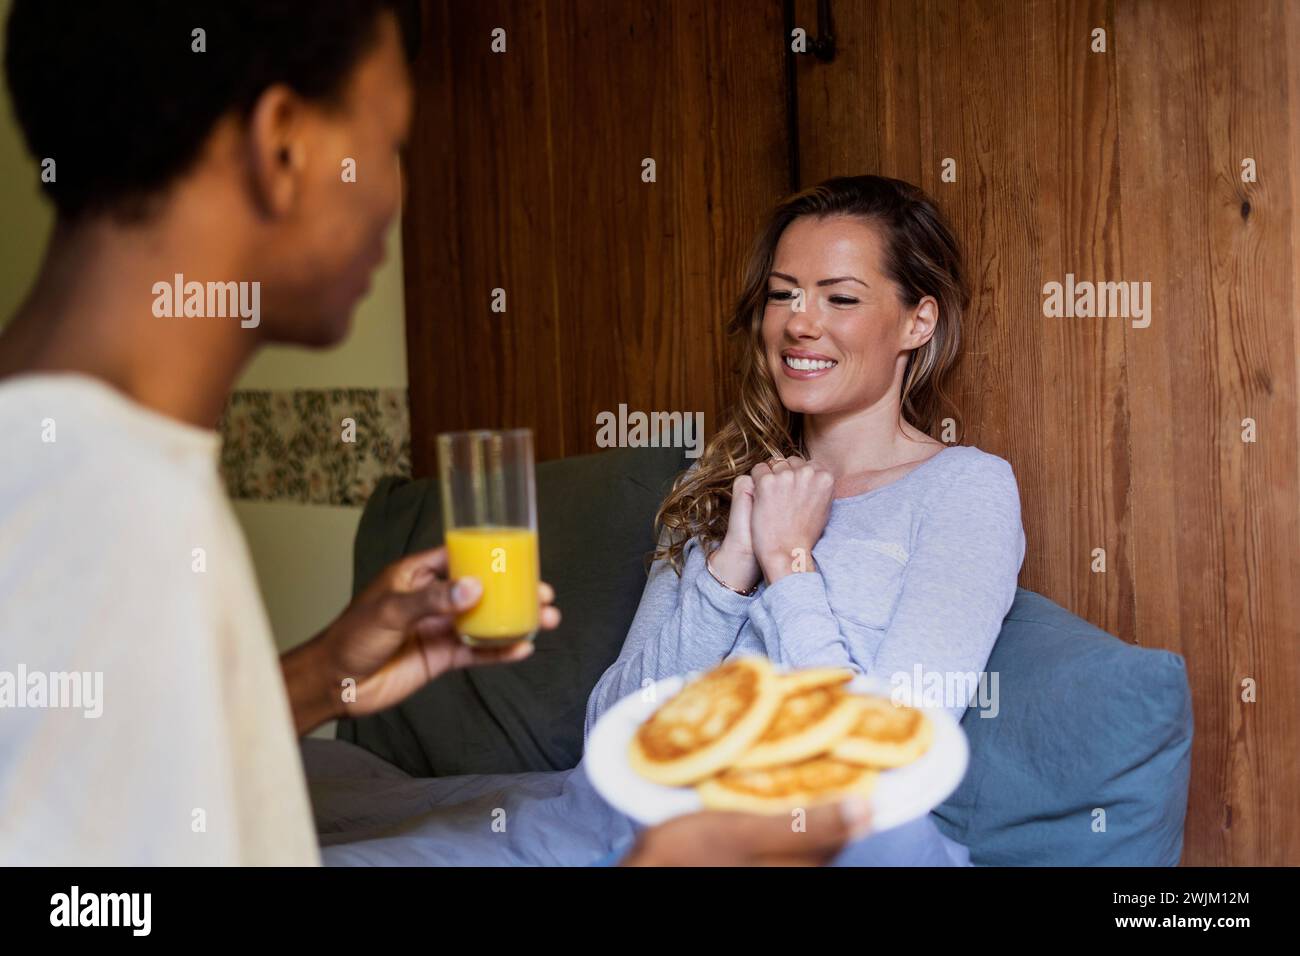 Glückliche Frau, die auf dem Bett lag, während Freunde sie mit Frühstück überraschten Stockfoto